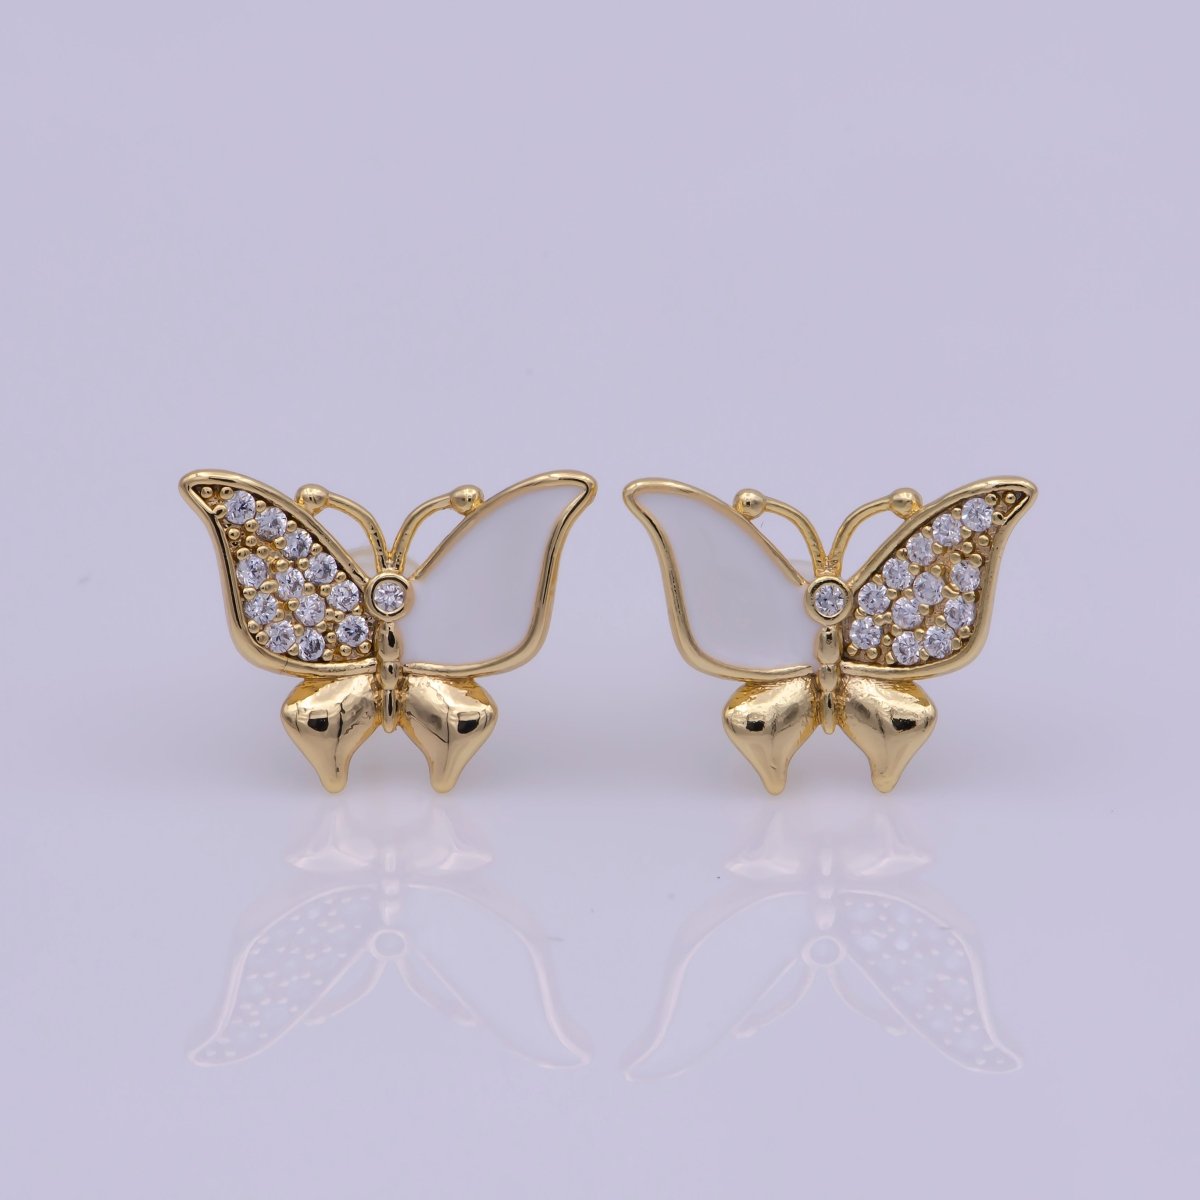 Dainty Teal, White Enamel, Crystal Zirconia CZ Butterfly Wings Gold Stud Earrings | T-225 T-226 - DLUXCA